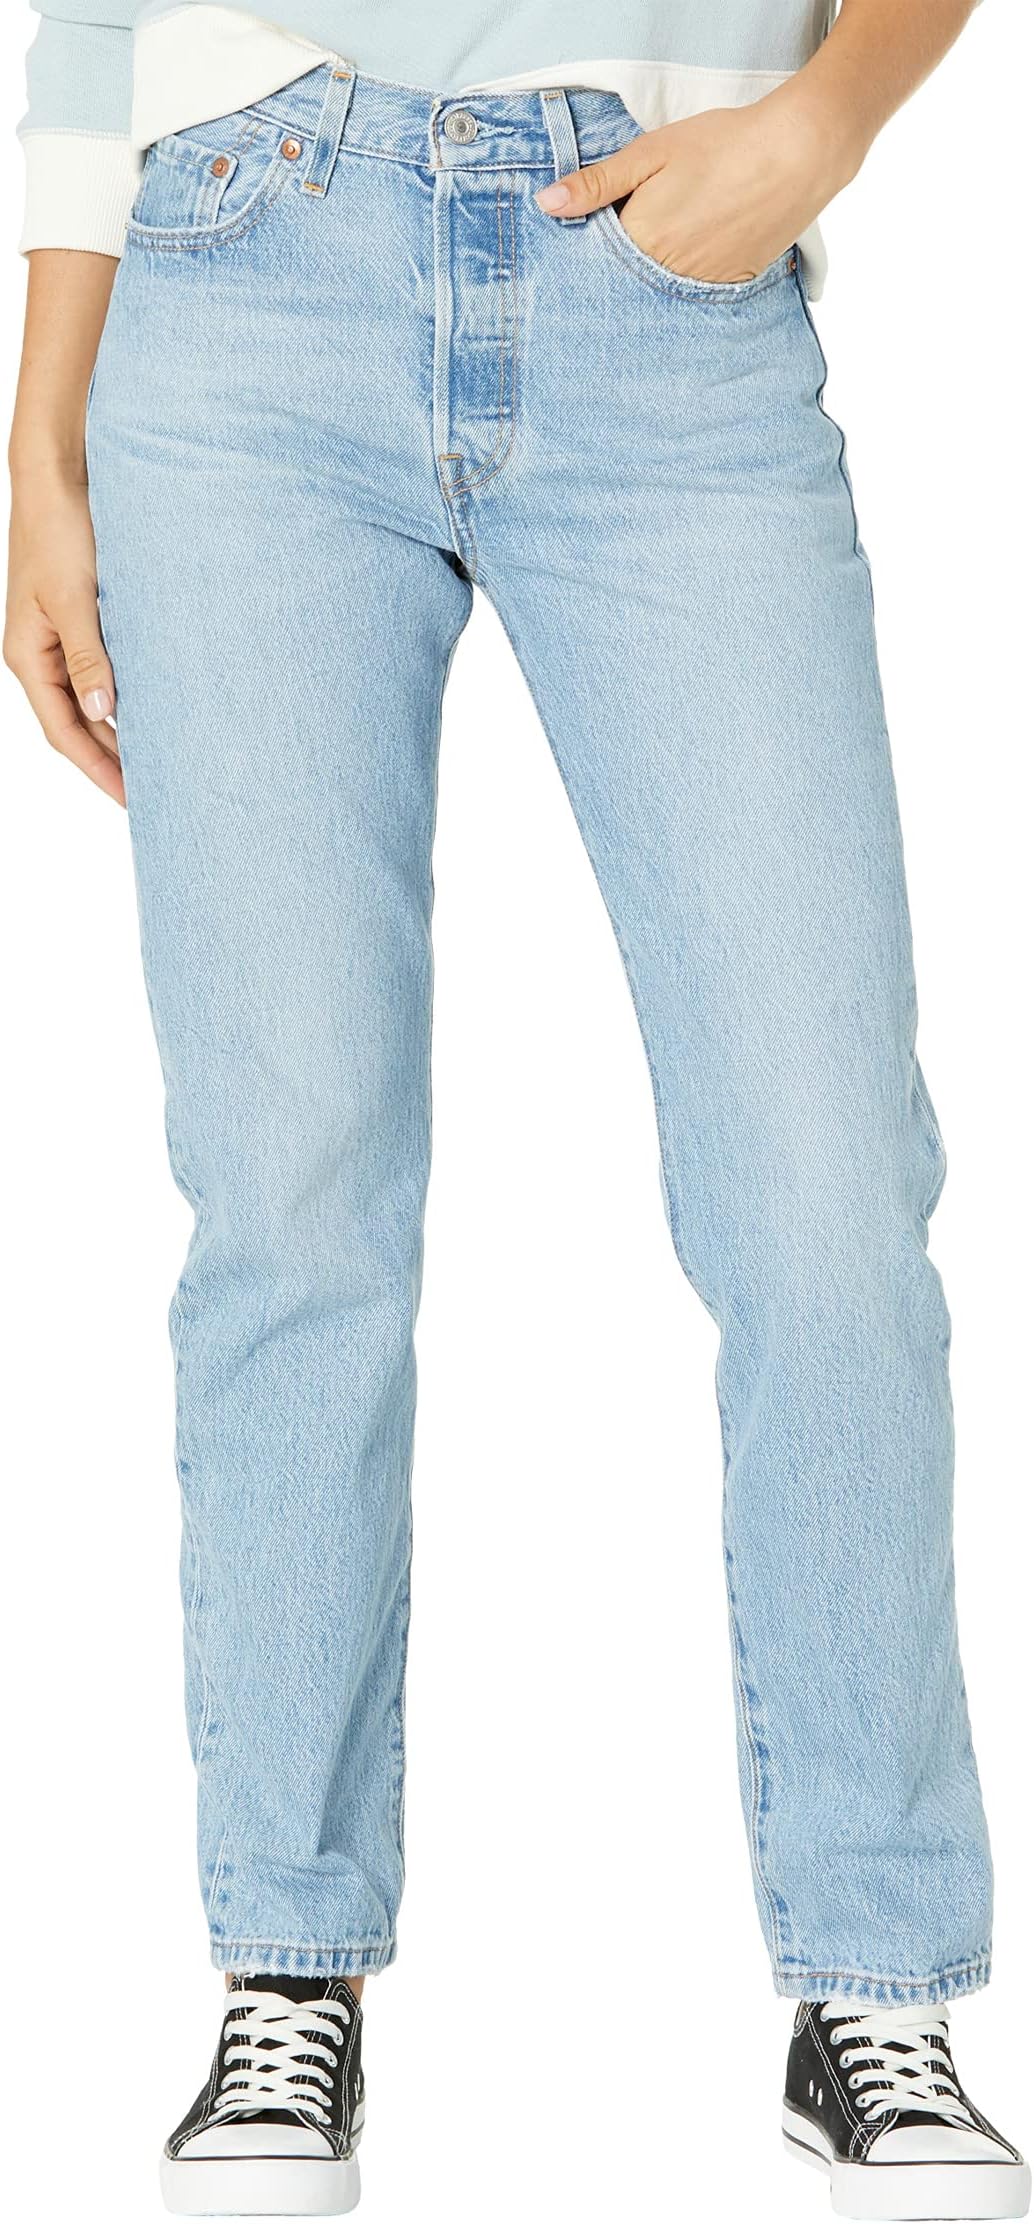 цена Джинсы 501 Jeans Levi's, цвет Luxor Lust